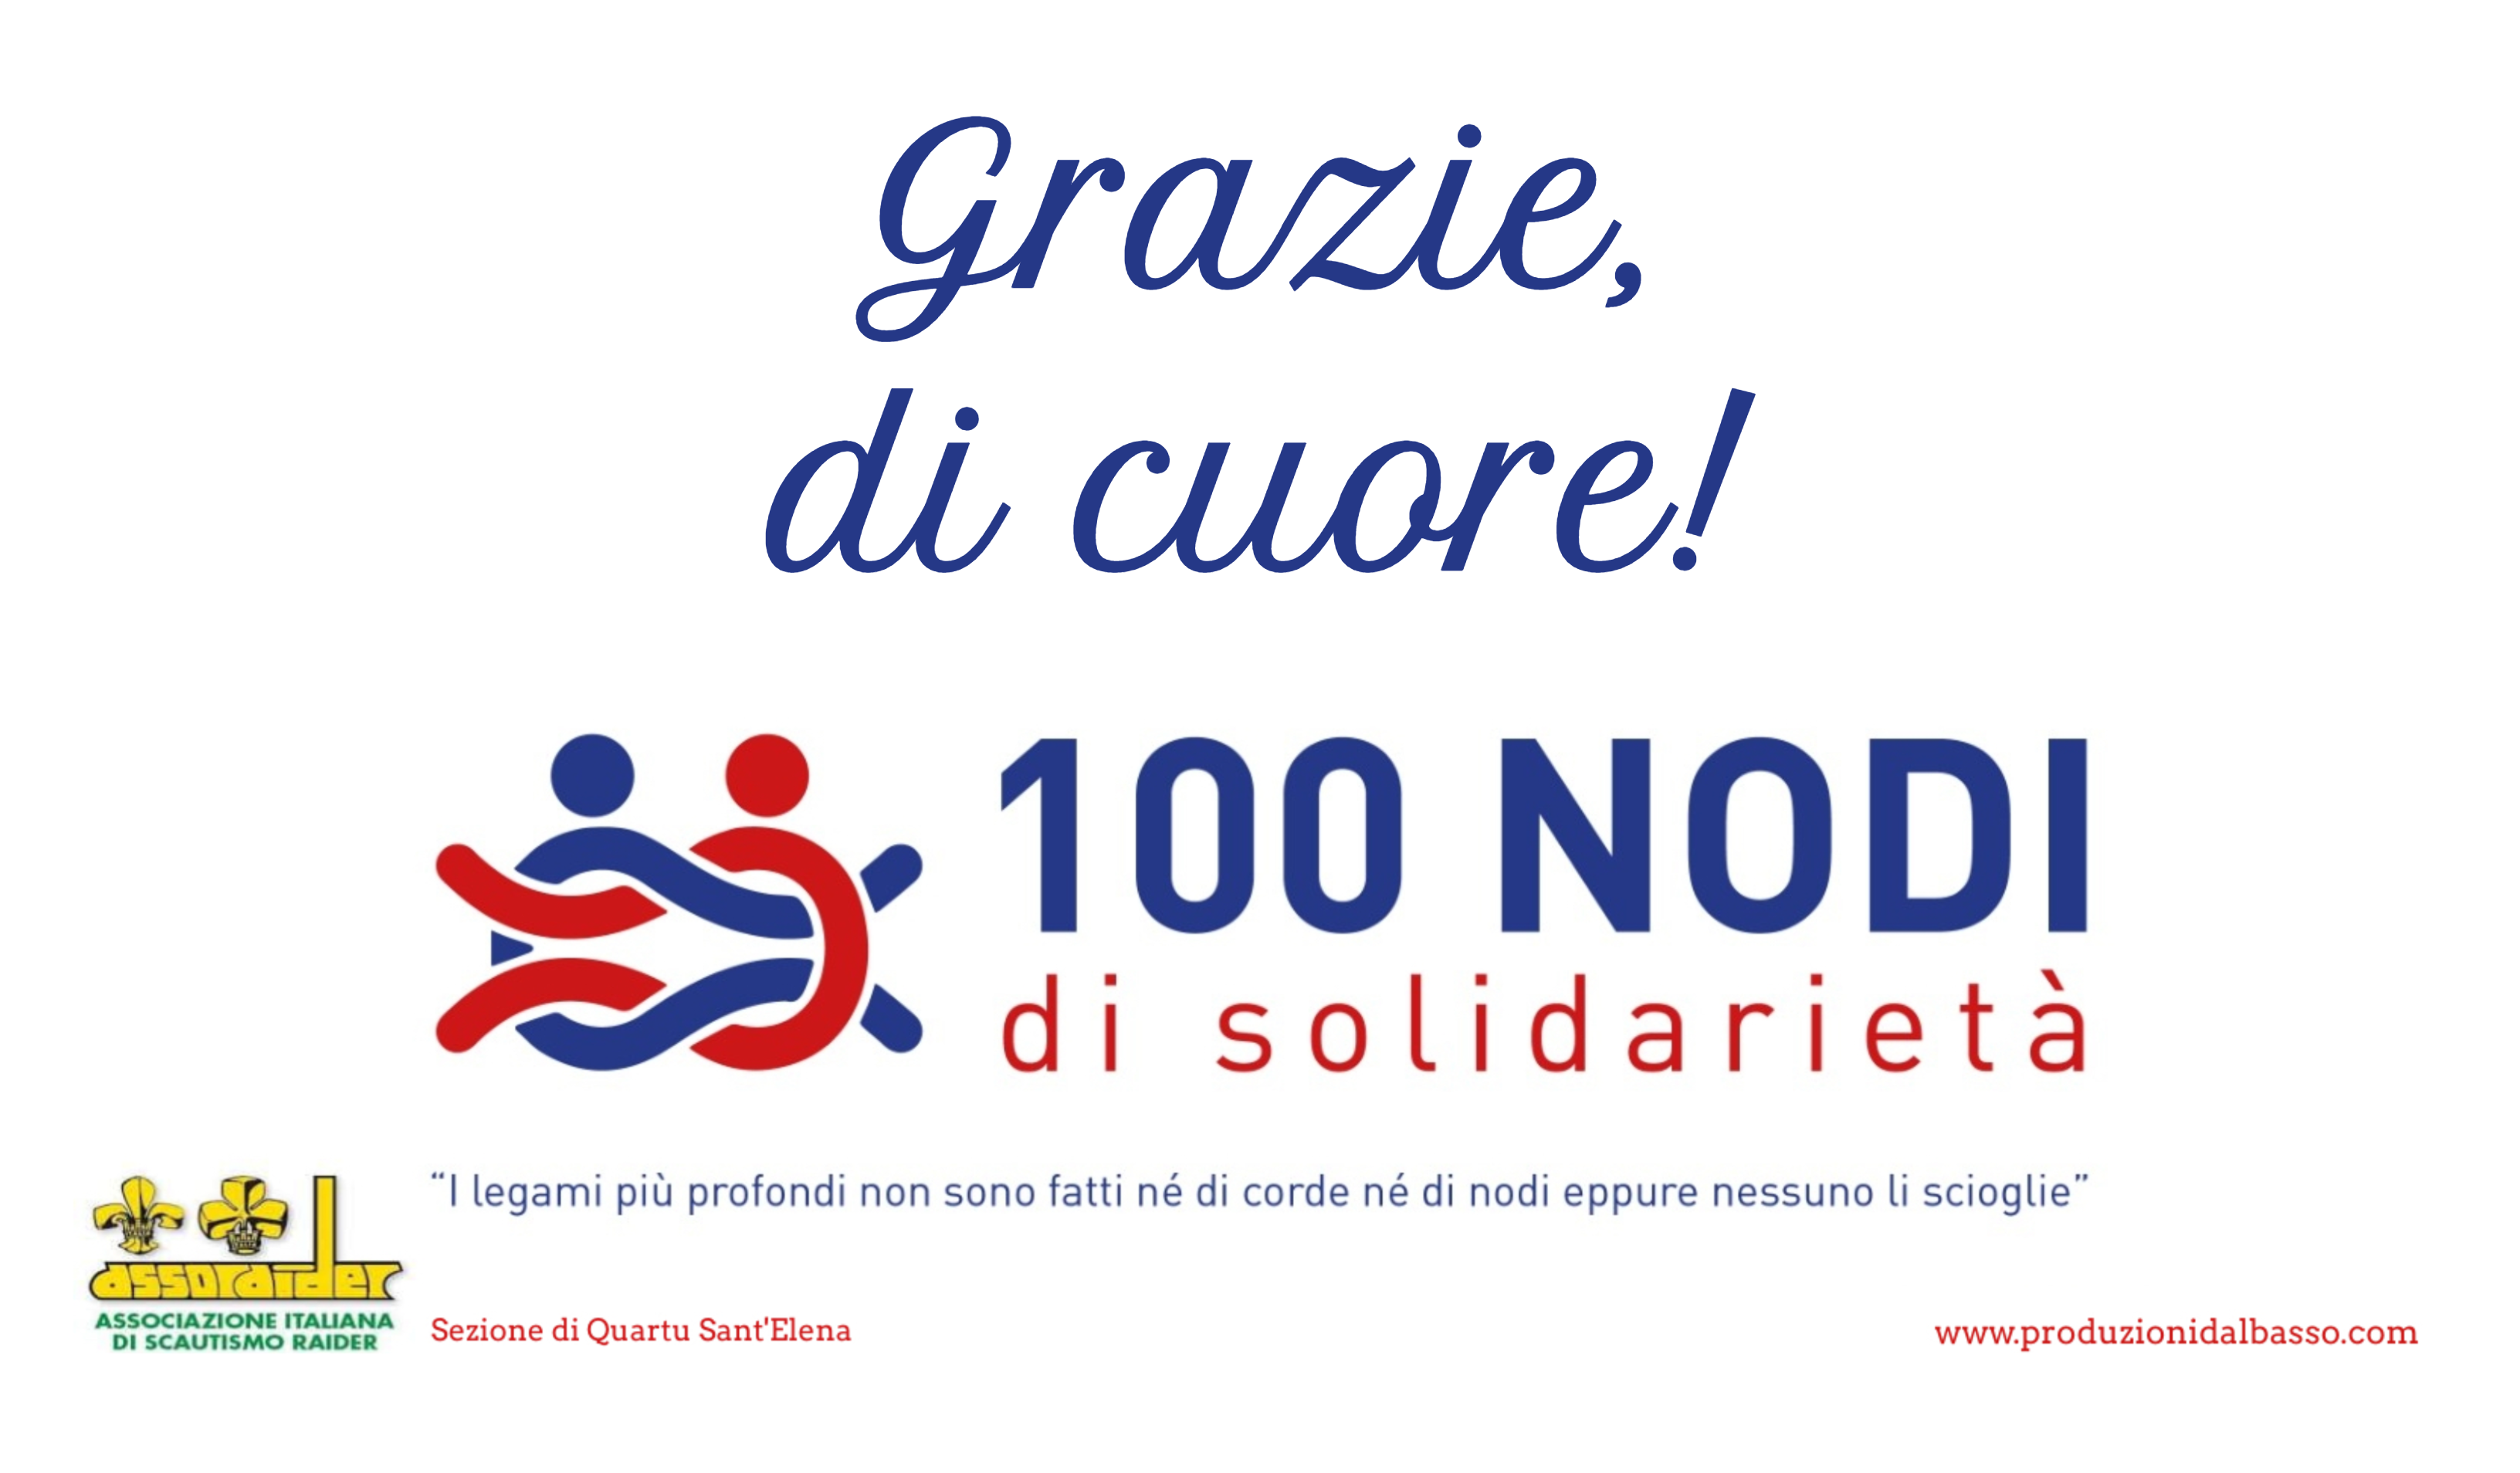 100 NODI di solidarietà